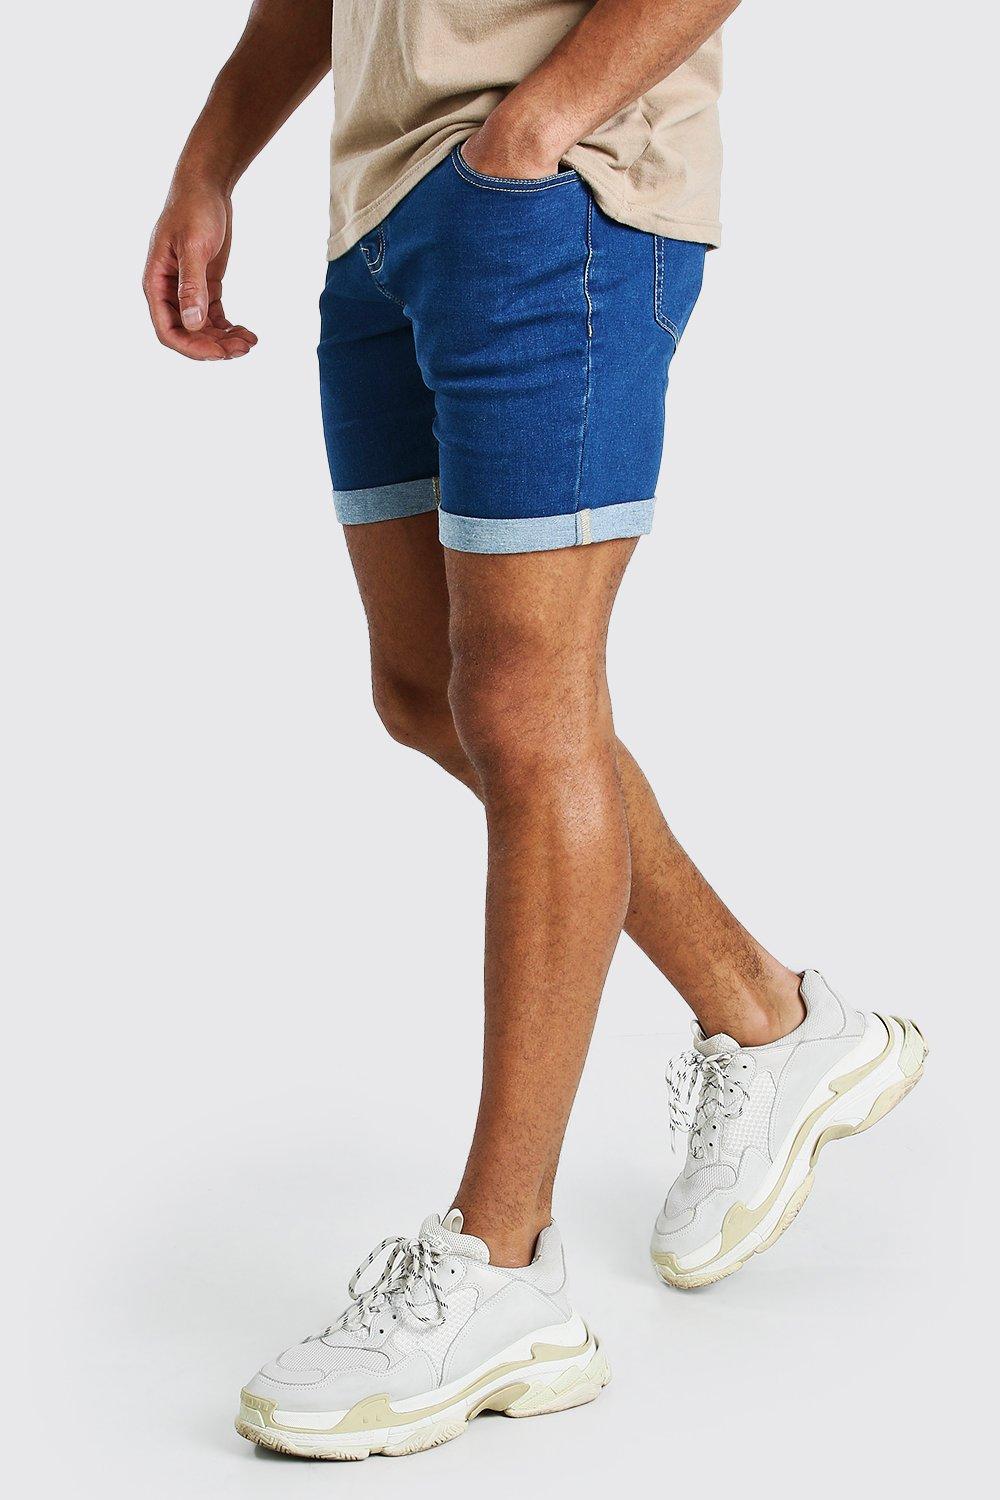 mens denim shorts australia